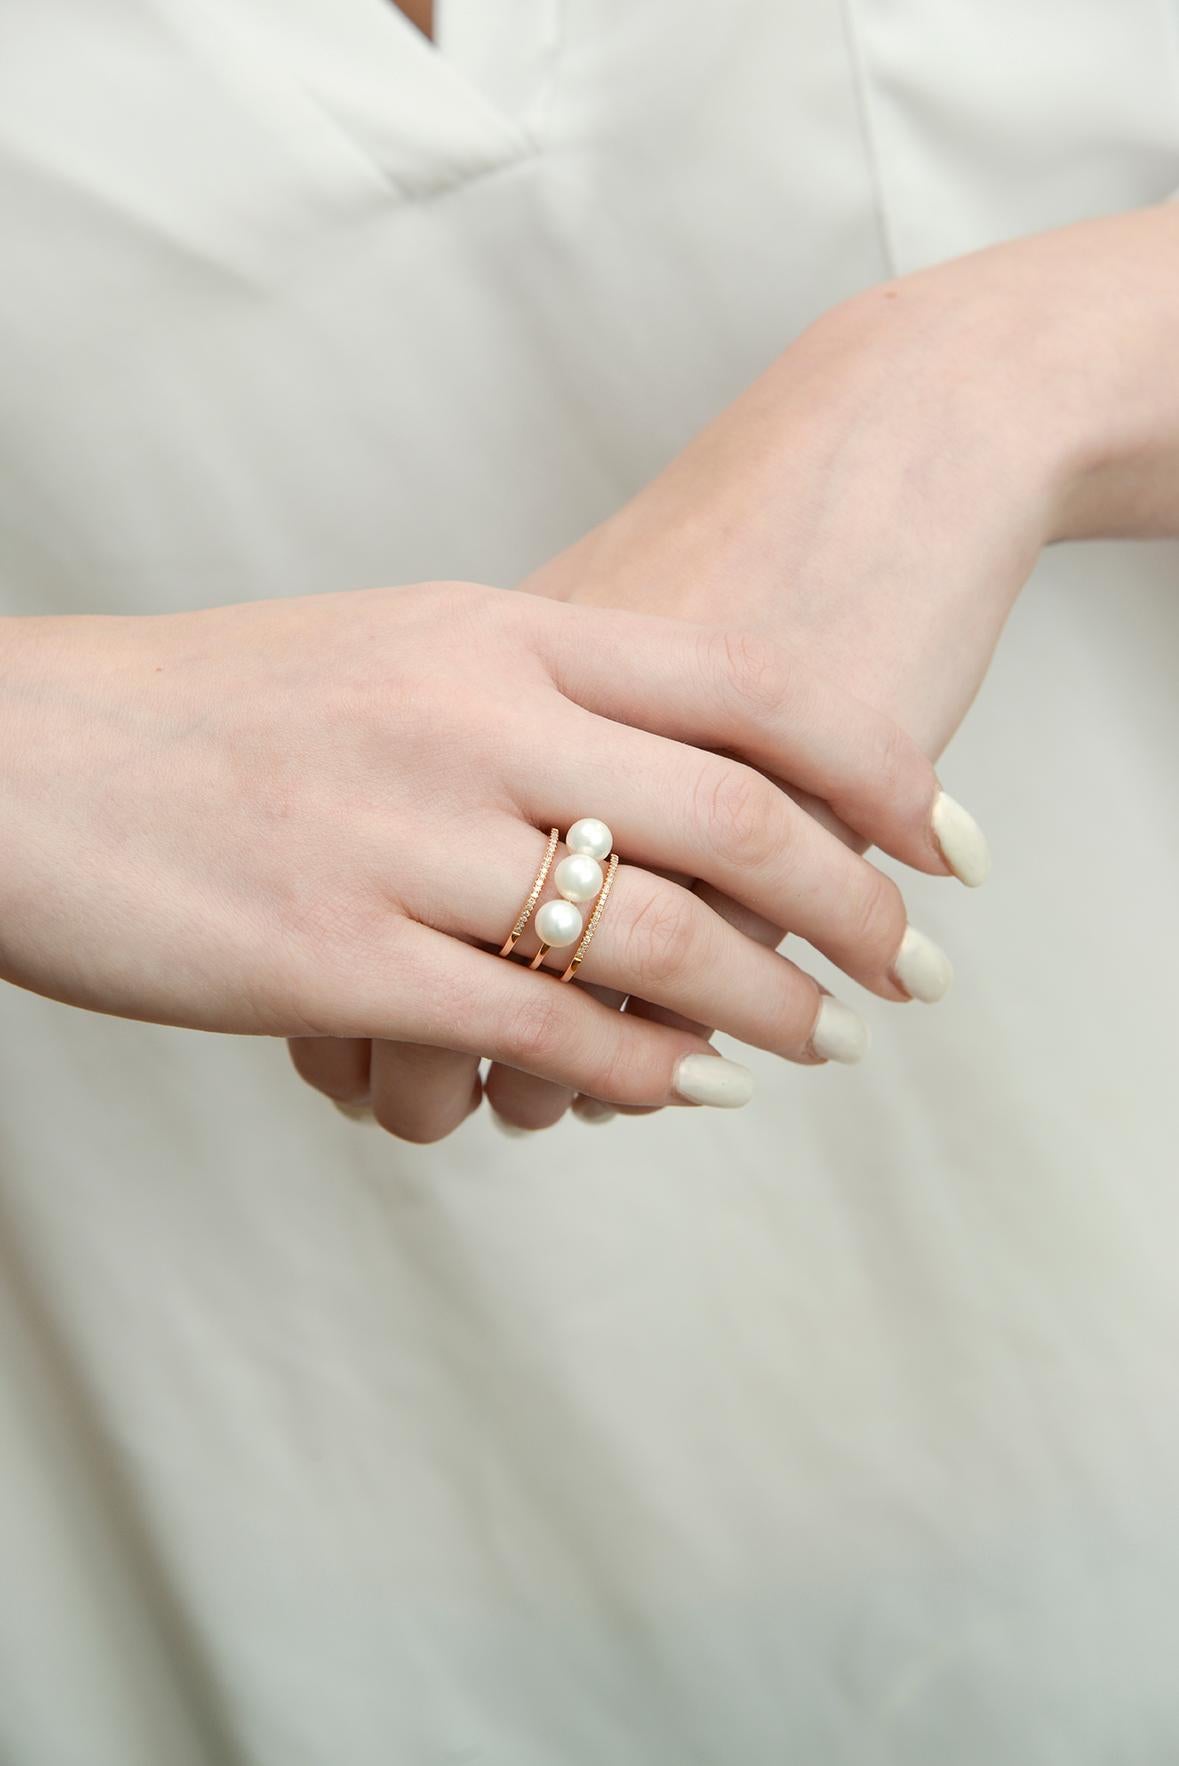 Dreifach-Ring mit Perlen und Diamanten aus 18 k Roségold.

Größe 6.5